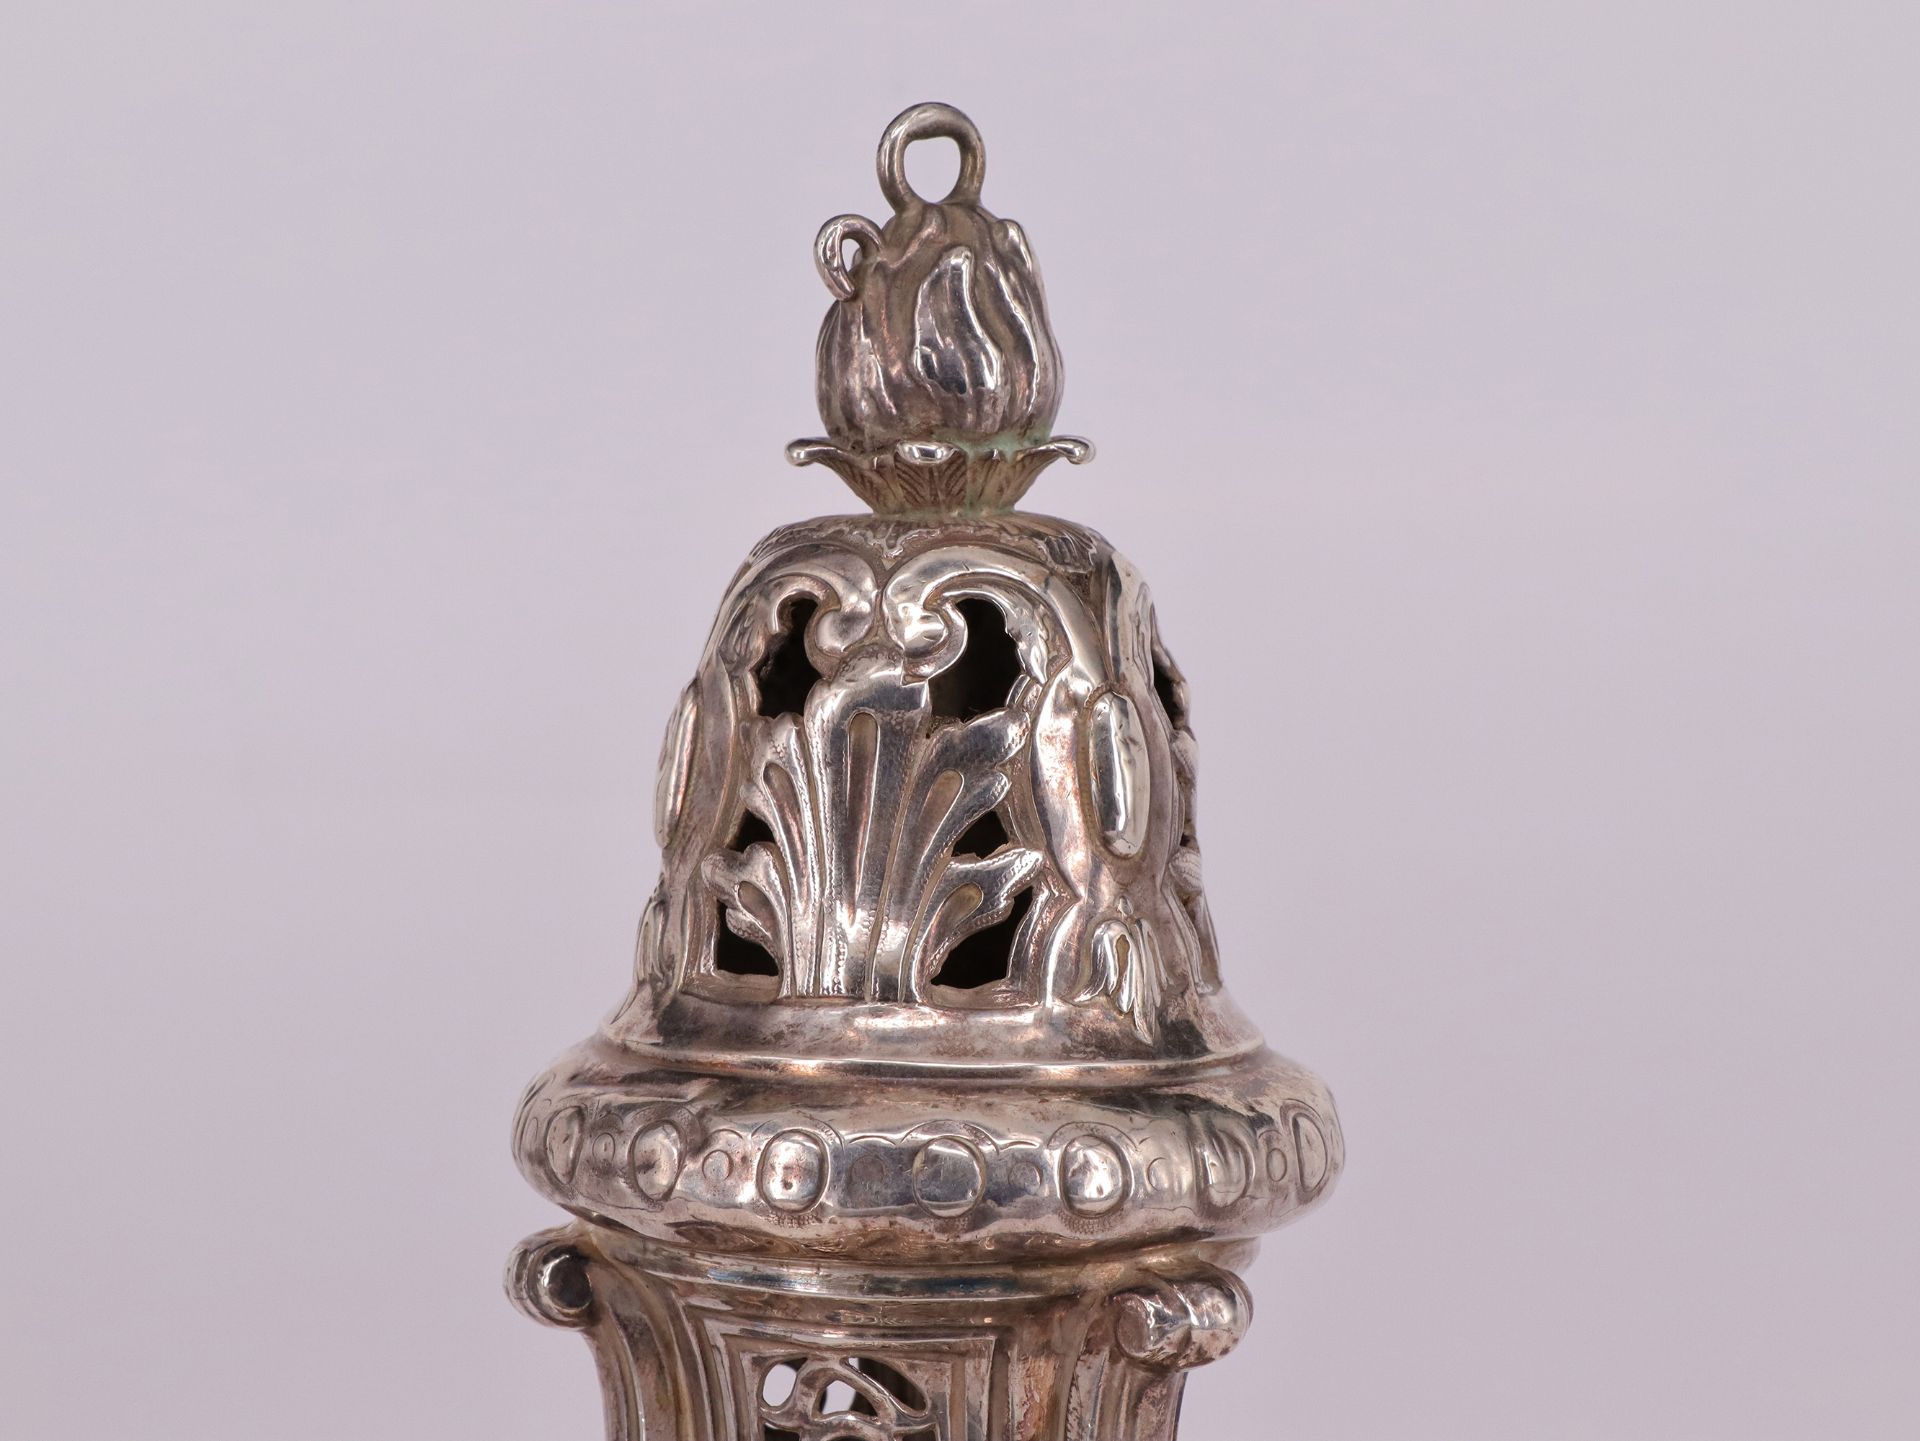 Weihrauchschwenker, Räuchergefäß, Silber, gepunzt, H 27 cm, 588gr / Incense burner, silver, - Image 4 of 5